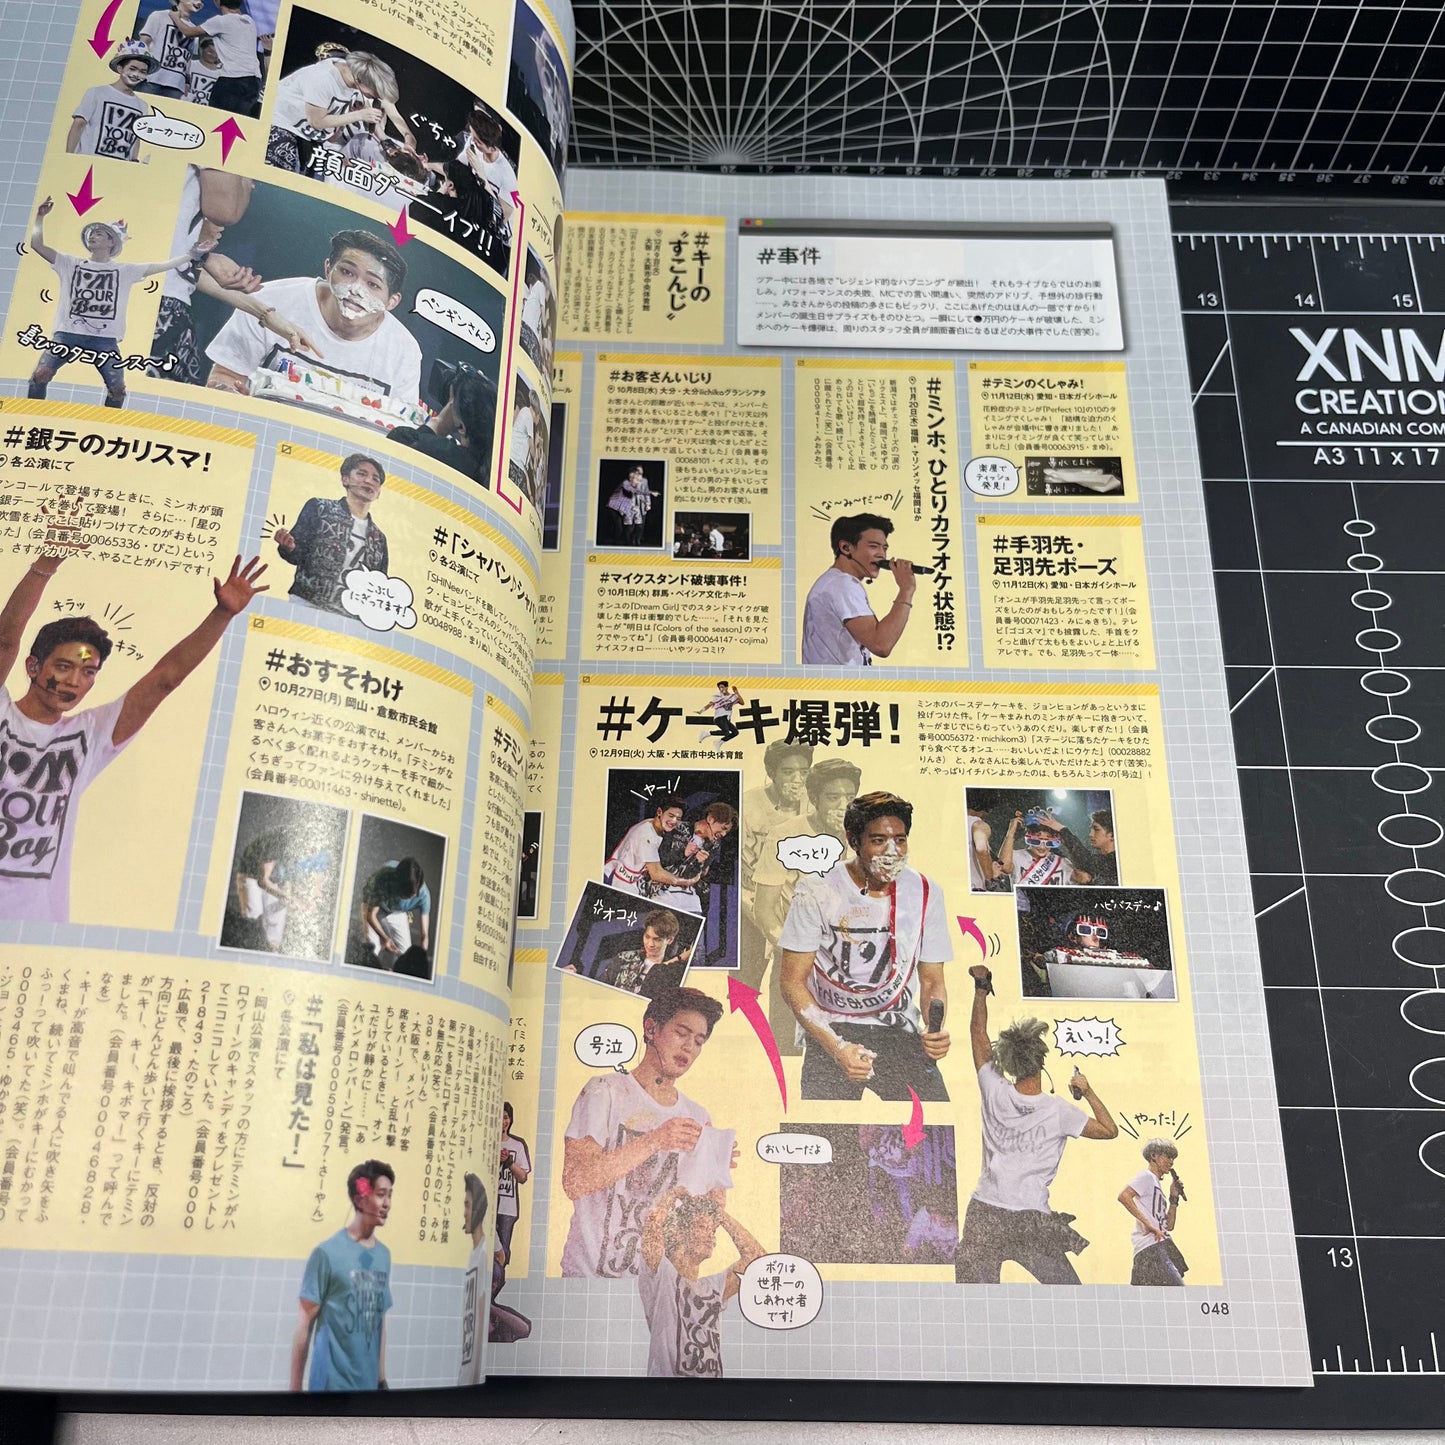 SHINee World J Official Fanclub Premium Magazine SEEK (Vol. 005)